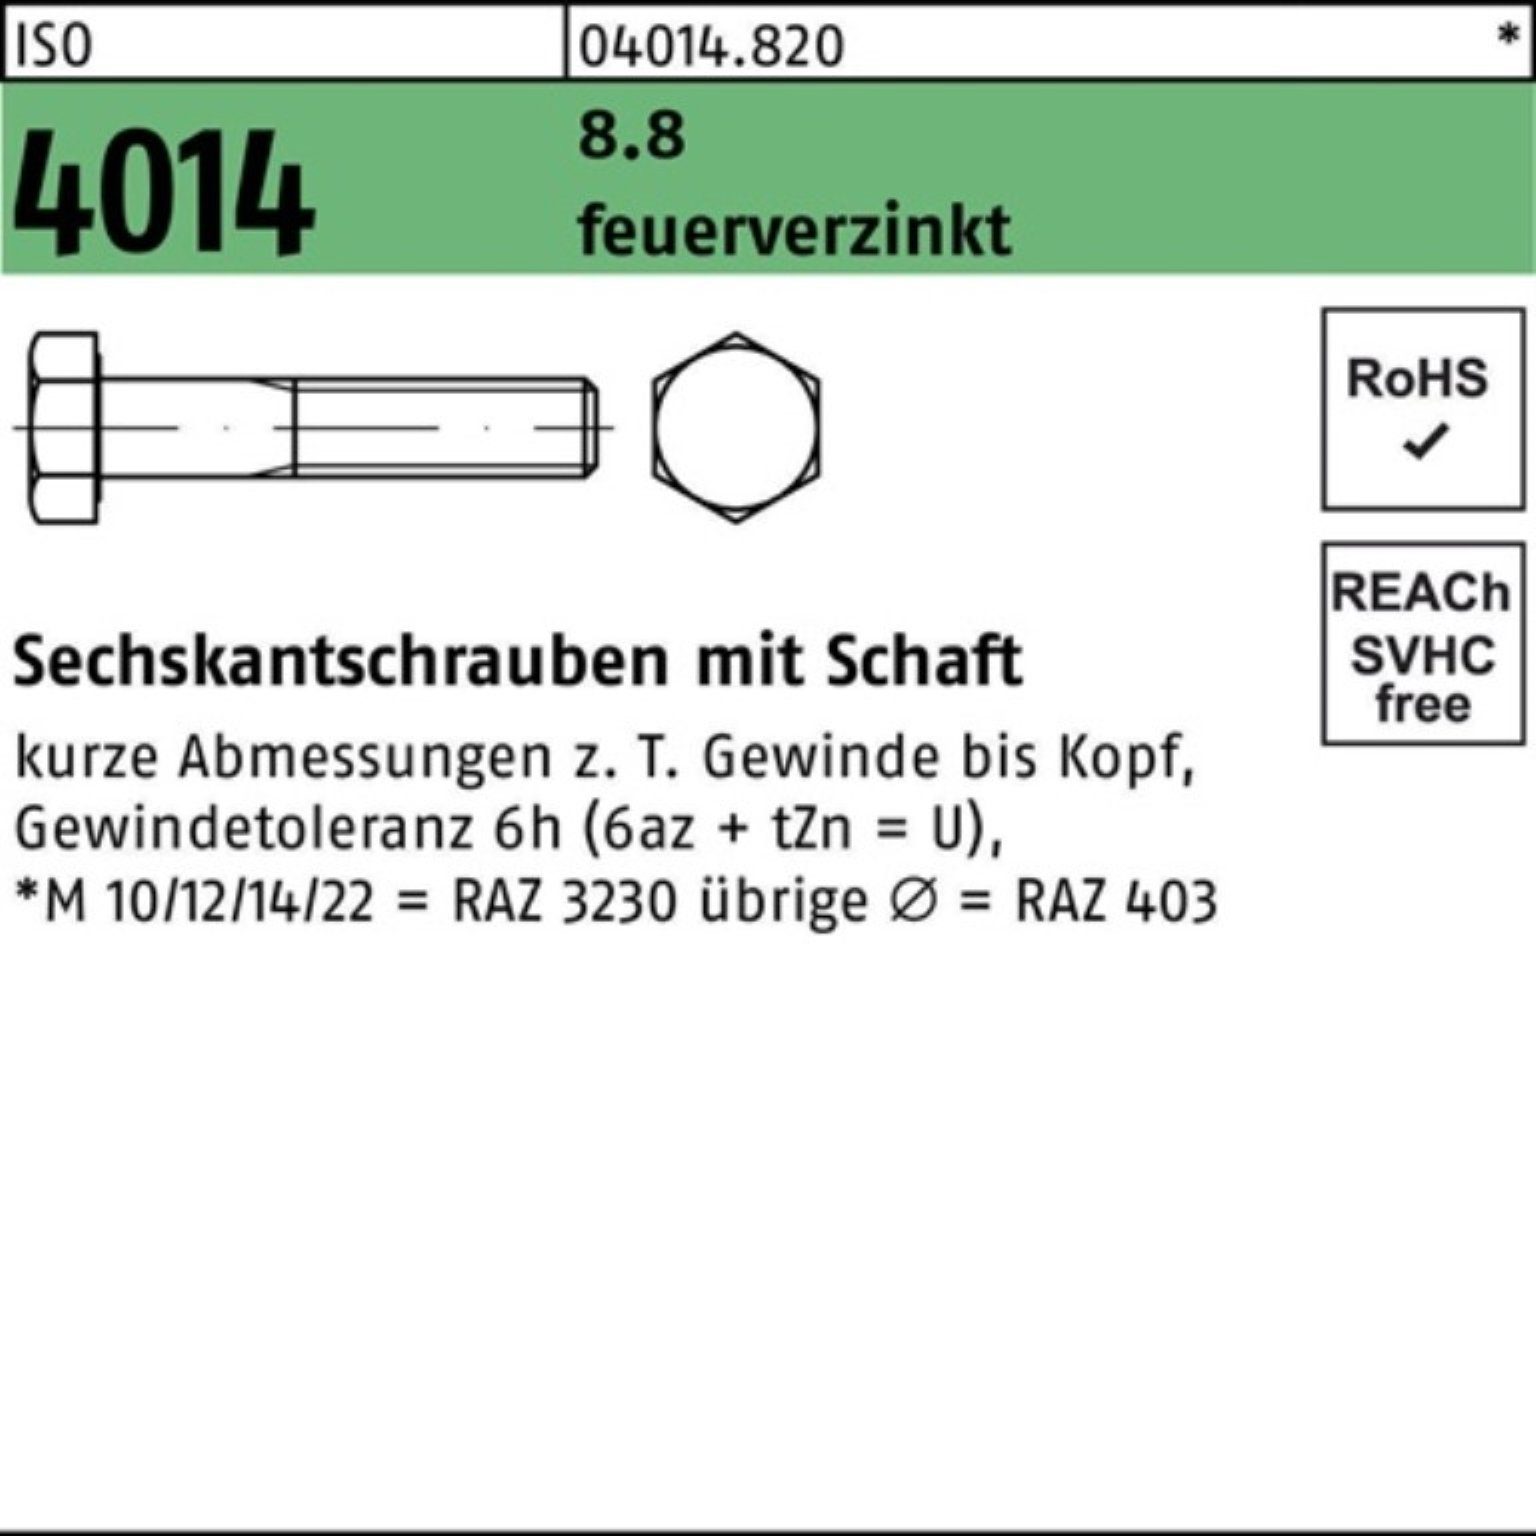 Bufab Sechskantschraube 100er Pack Sechskantschraube ISO 4014 Schaft M24x 85 8.8 feuerverz. 10